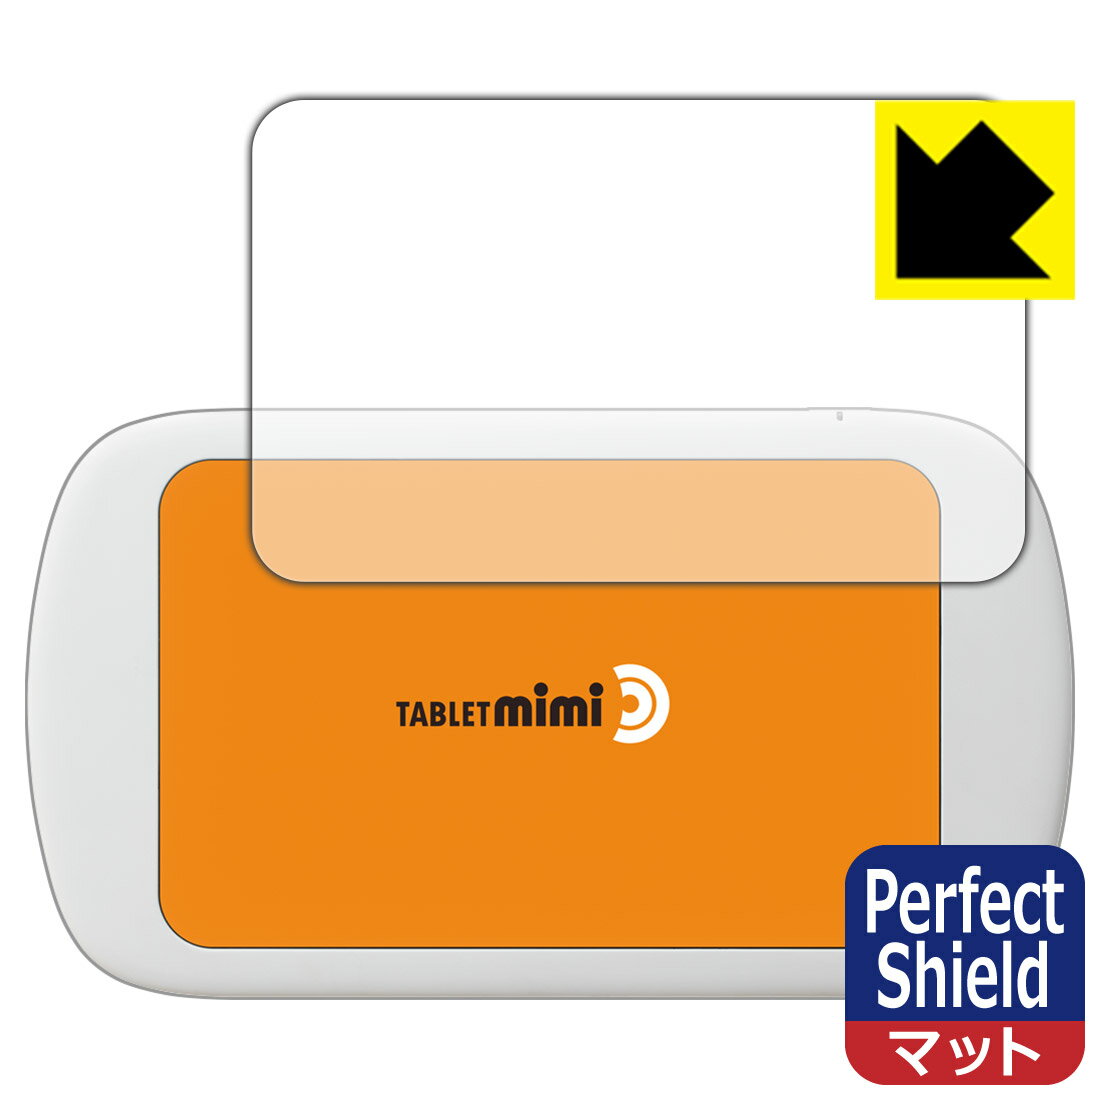 ●対応機種 : SOURCENEXT Tablet mimi (タブレット ミミ) TBMJW●内容量 : 1枚●「Perfect Shield」は画面の反射を抑え、指のすべりもなめらかな指紋や皮脂汚れがつきにくい『アンチグレアタイプ(非光沢)の保護フィルム』●安心の国産素材を使用。日本国内の自社工場で製造し出荷しています。【ポスト投函送料無料】商品は【ポスト投函発送 (追跡可能メール便)】で発送します。お急ぎ、配達日時を指定されたい方は以下のクーポンを同時購入ください。【お急ぎ便クーポン】　プラス110円(税込)で速達扱いでの発送。お届けはポストへの投函となります。【配達日時指定クーポン】　プラス550円(税込)で配達日時を指定し、宅配便で発送させていただきます。【お急ぎ便クーポン】はこちらをクリック【配達日時指定クーポン】はこちらをクリック 　 表面に微細な凹凸を作ることにより、外光を乱反射させギラツキを抑える「アンチグレア加工」がされております。 屋外での太陽光の映り込み、屋内でも蛍光灯などの映り込みが気になるシーンが多い方におすすめです。 また、指紋がついた場合でも目立ちにくいという特長があります。 指滑りはさらさらな使用感でストレスのない操作・入力が可能です。 ハードコート加工がされており、キズや擦れに強くなっています。簡単にキズがつかず長くご利用いただけます。 反射防止のアンチグレア加工で指紋が目立ちにくい上、表面は防汚コーティングがされており、皮脂や汚れがつきにくく、また、落ちやすくなっています。 接着面は気泡の入りにくい特殊な自己吸着タイプです。素材に柔軟性があり、貼り付け作業も簡単にできます。また、はがすときにガラス製フィルムのように割れてしまうことはありません。 貼り直しが何度でもできるので、正しい位置へ貼り付けられるまでやり直すことができます。 最高級グレードの国産素材を日本国内の弊社工場で加工している完全な Made in Japan です。安心の品質をお届けします。 使用上の注意 ●本製品は機器の画面をキズなどから保護するフィルムです。他の目的にはご使用にならないでください。 ●本製品は液晶保護および機器本体を完全に保護することを保証するものではありません。機器の破損、損傷、故障、その他損害につきましては一切の責任を負いかねます。 ●製品の性質上、画面操作の反応が変化したり、表示等が変化して見える場合がございます。 ●貼り付け作業時の失敗(位置ズレ、汚れ、ゆがみ、折れ、気泡など)および取り外し作業時の破損、損傷などについては、一切の責任を負いかねます。 ●水に濡れた状態でのご使用は吸着力の低下などにより、保護フィルムがはがれてしまう場合がございます。防水対応の機器でご使用の場合はご注意ください。 ●アルコール類やその他薬剤を本製品に付着させないでください。表面のコーティングや吸着面が変質するおそれがあります。 ●品質向上のため、仕様などを予告なく変更する場合がございますので、予めご了承ください。